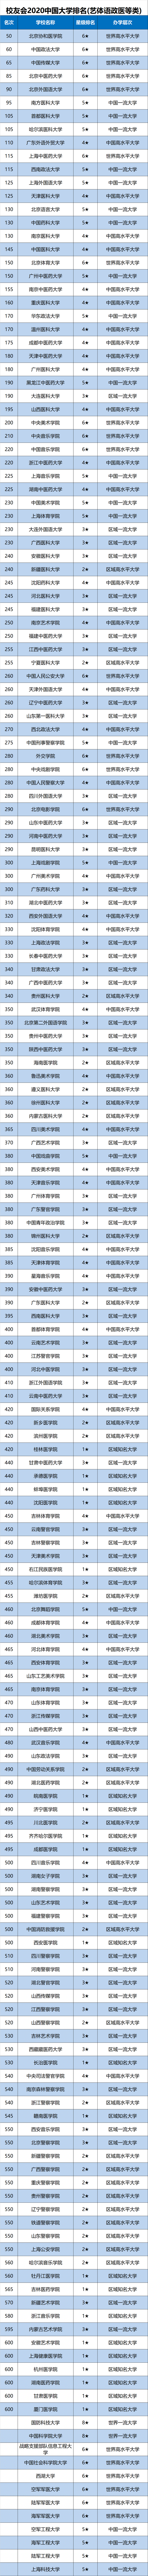 2020中国大学排行榜正式发布，华中科大武汉大学挤进全国10强